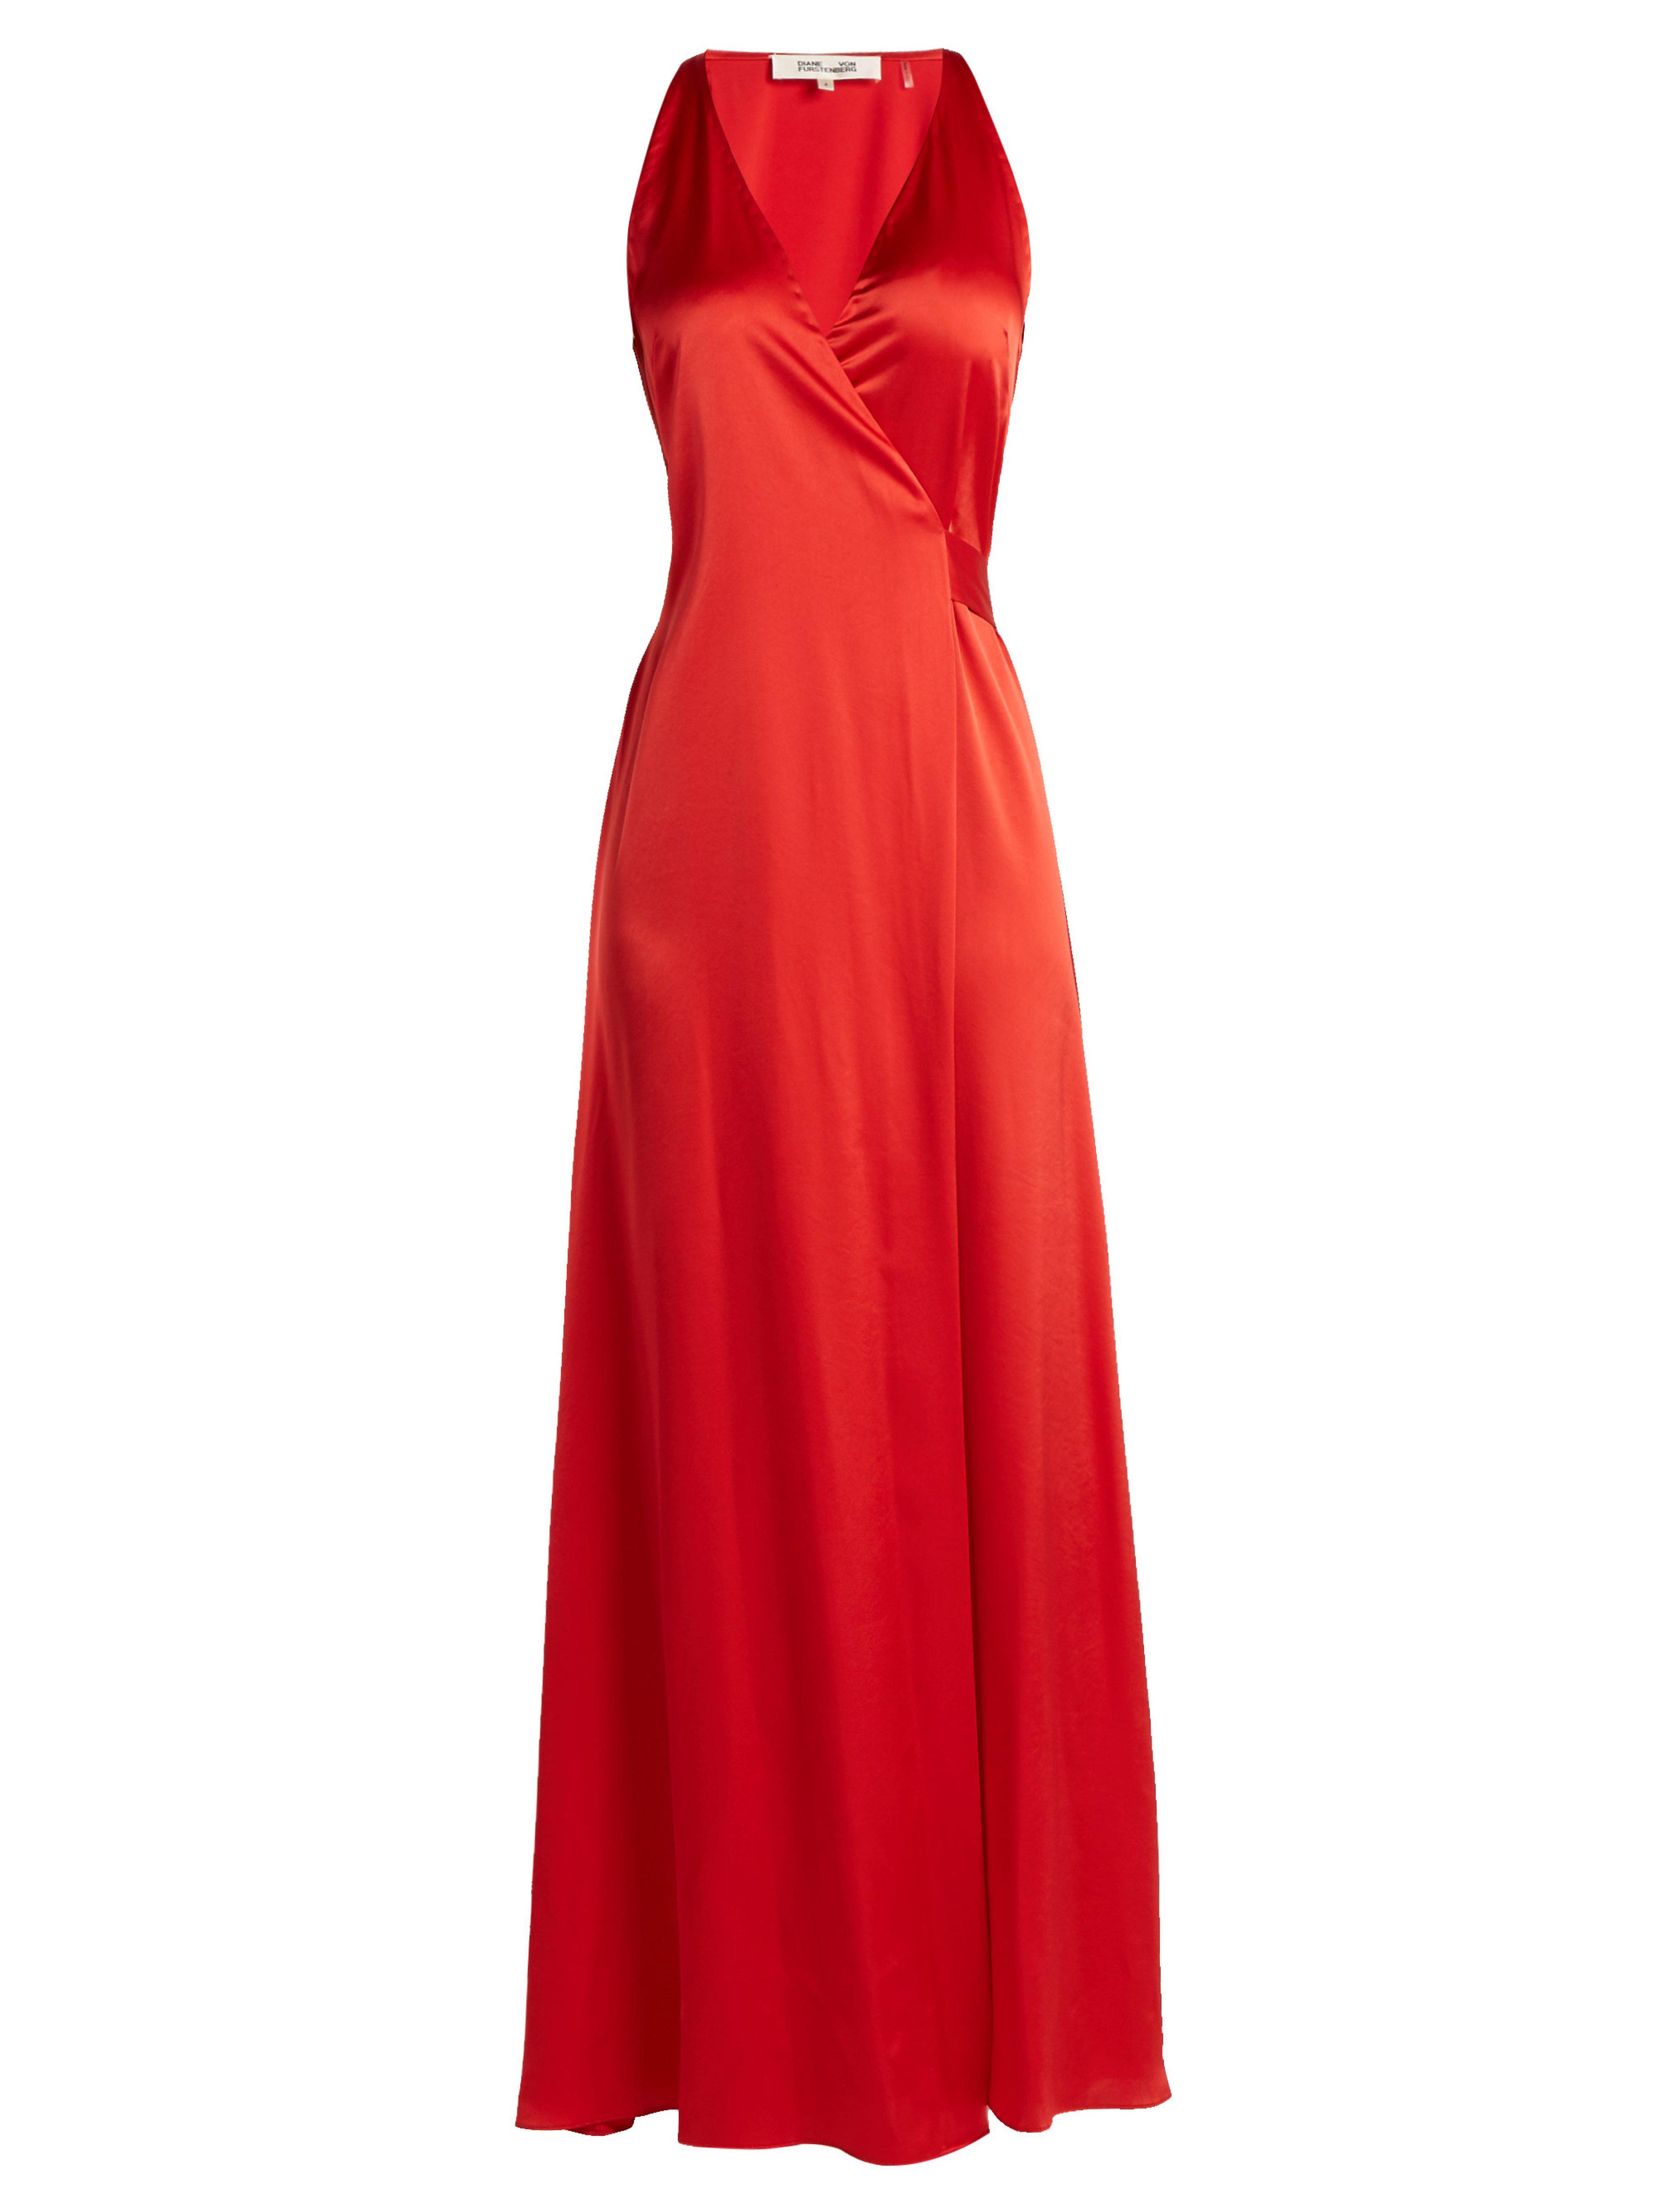 Diane von Furstenberg Satin Wrap Dress in Red - Lyst